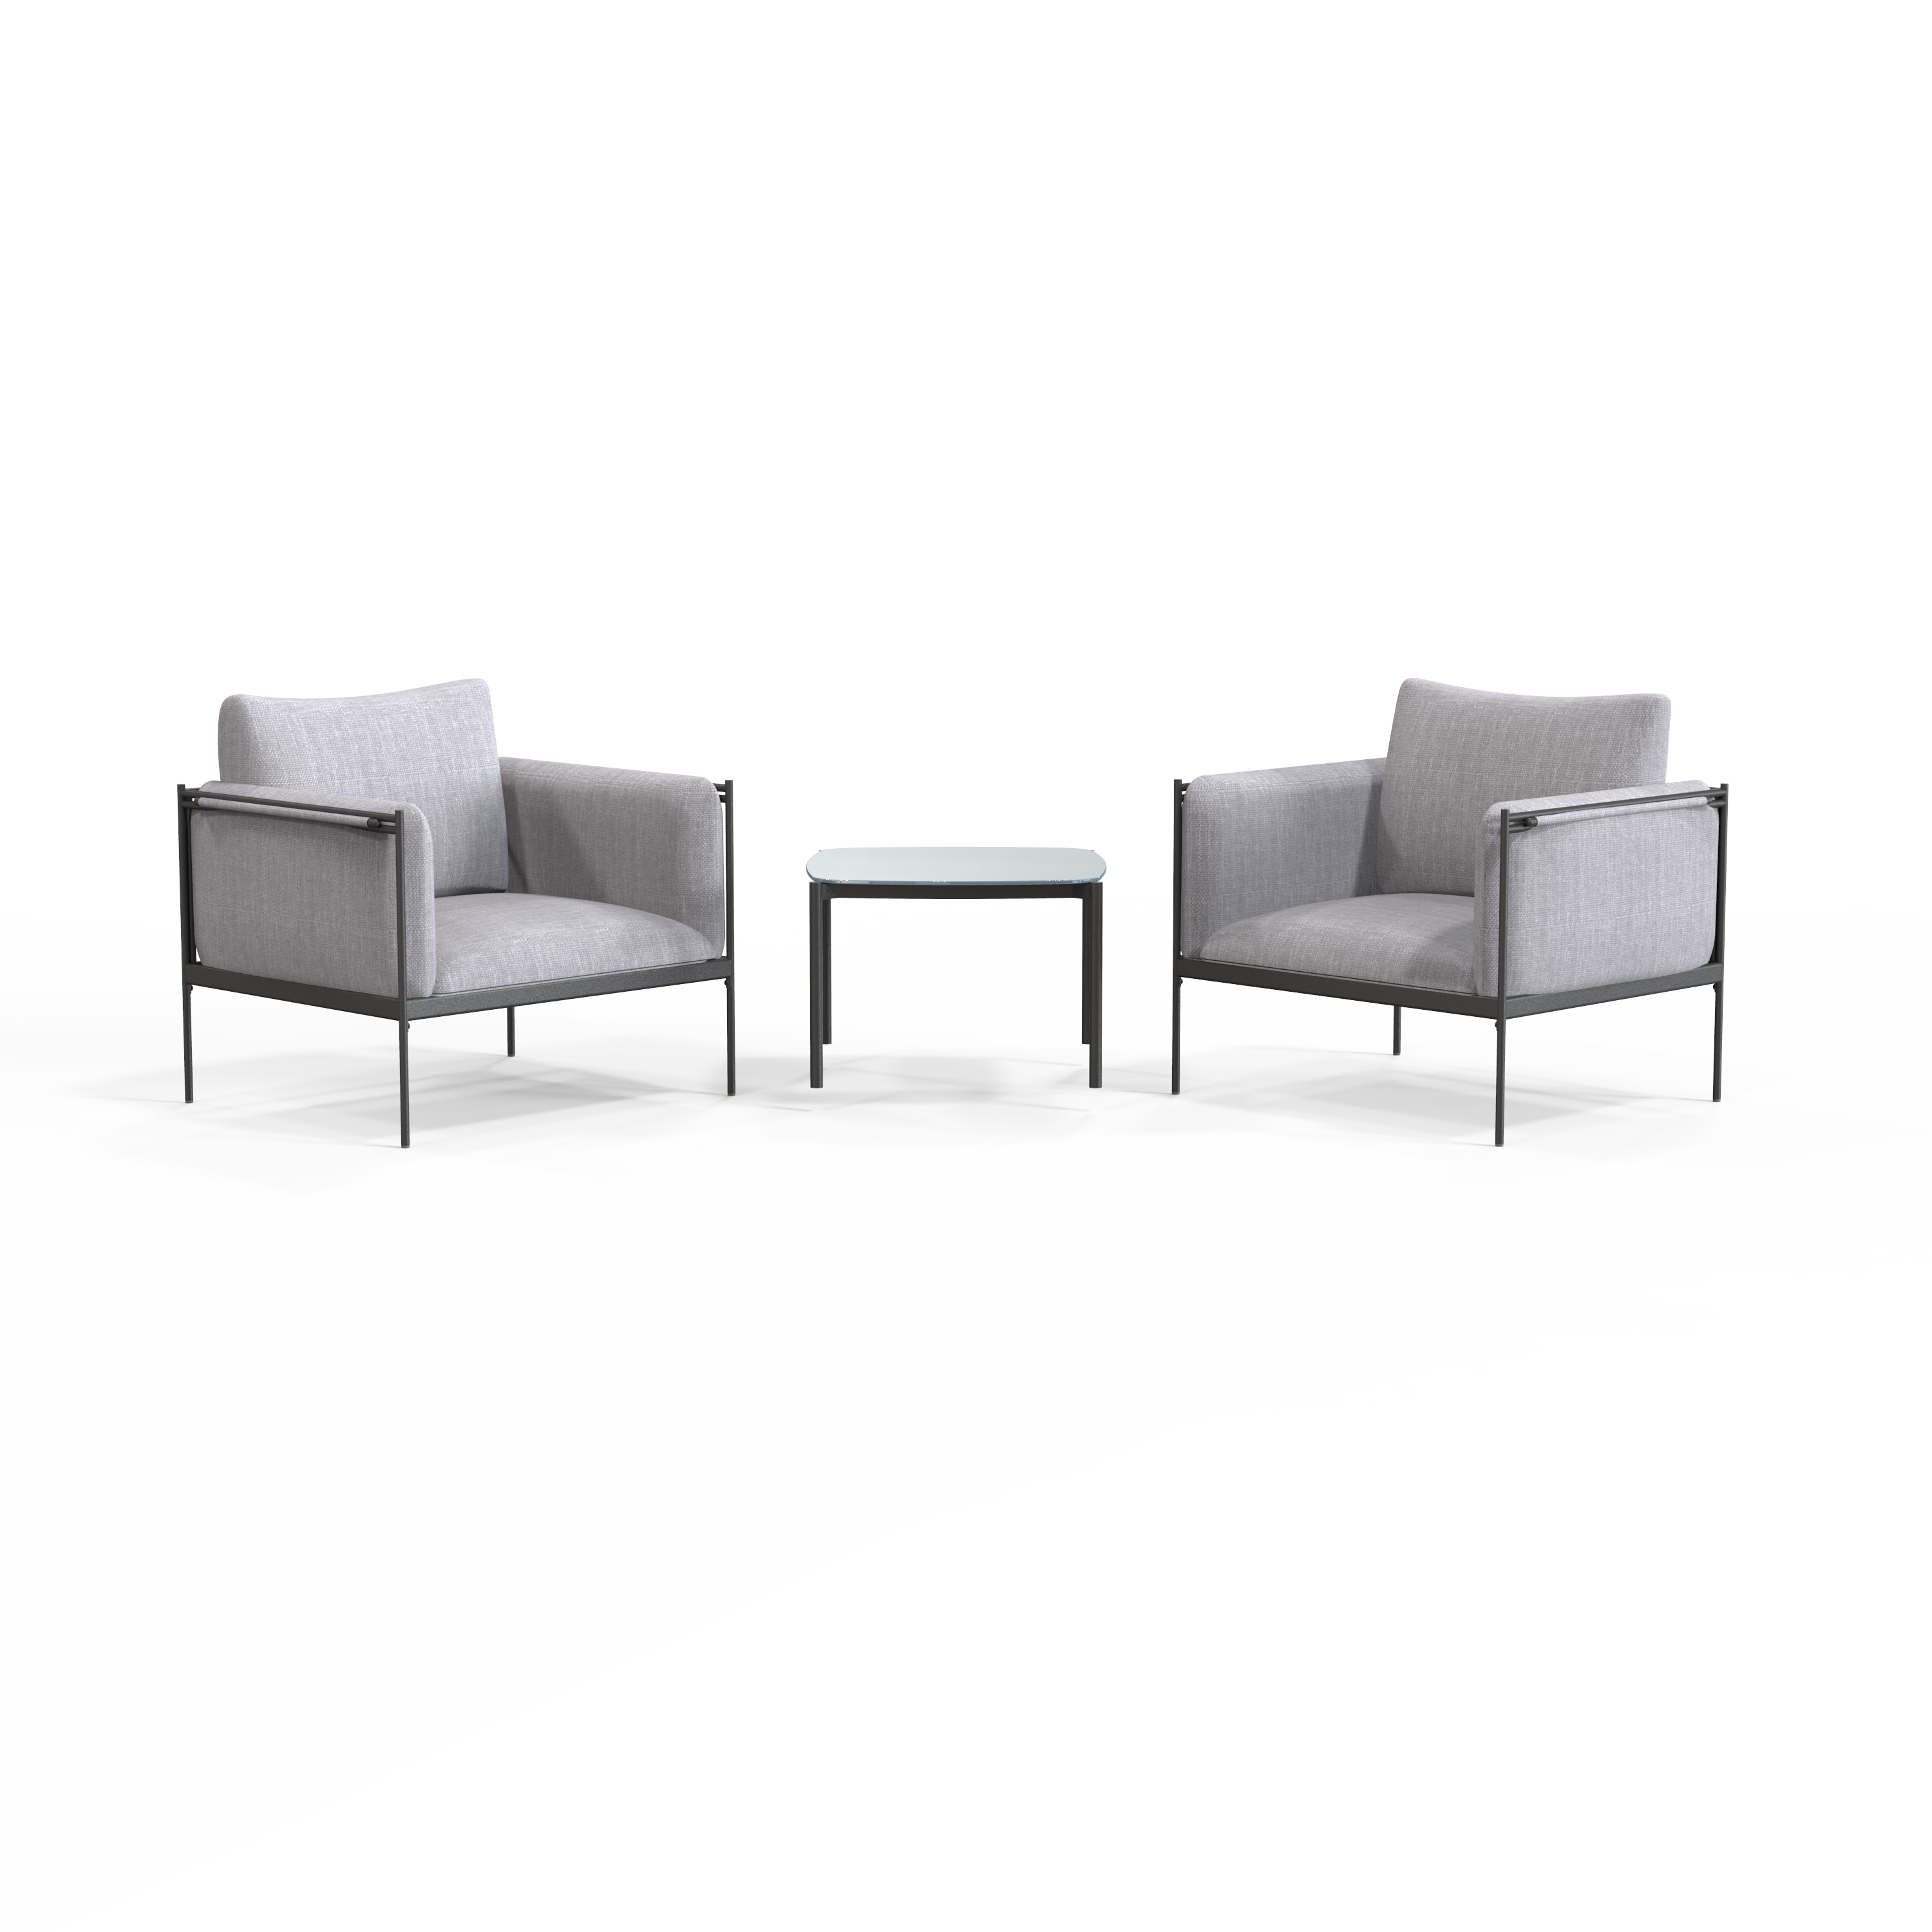 84252499 Набор садовой мебели Levo сталь/текстилен/полиэстер/стекло серый: стол и 2 кресла STLM-0047503 NATERIAL